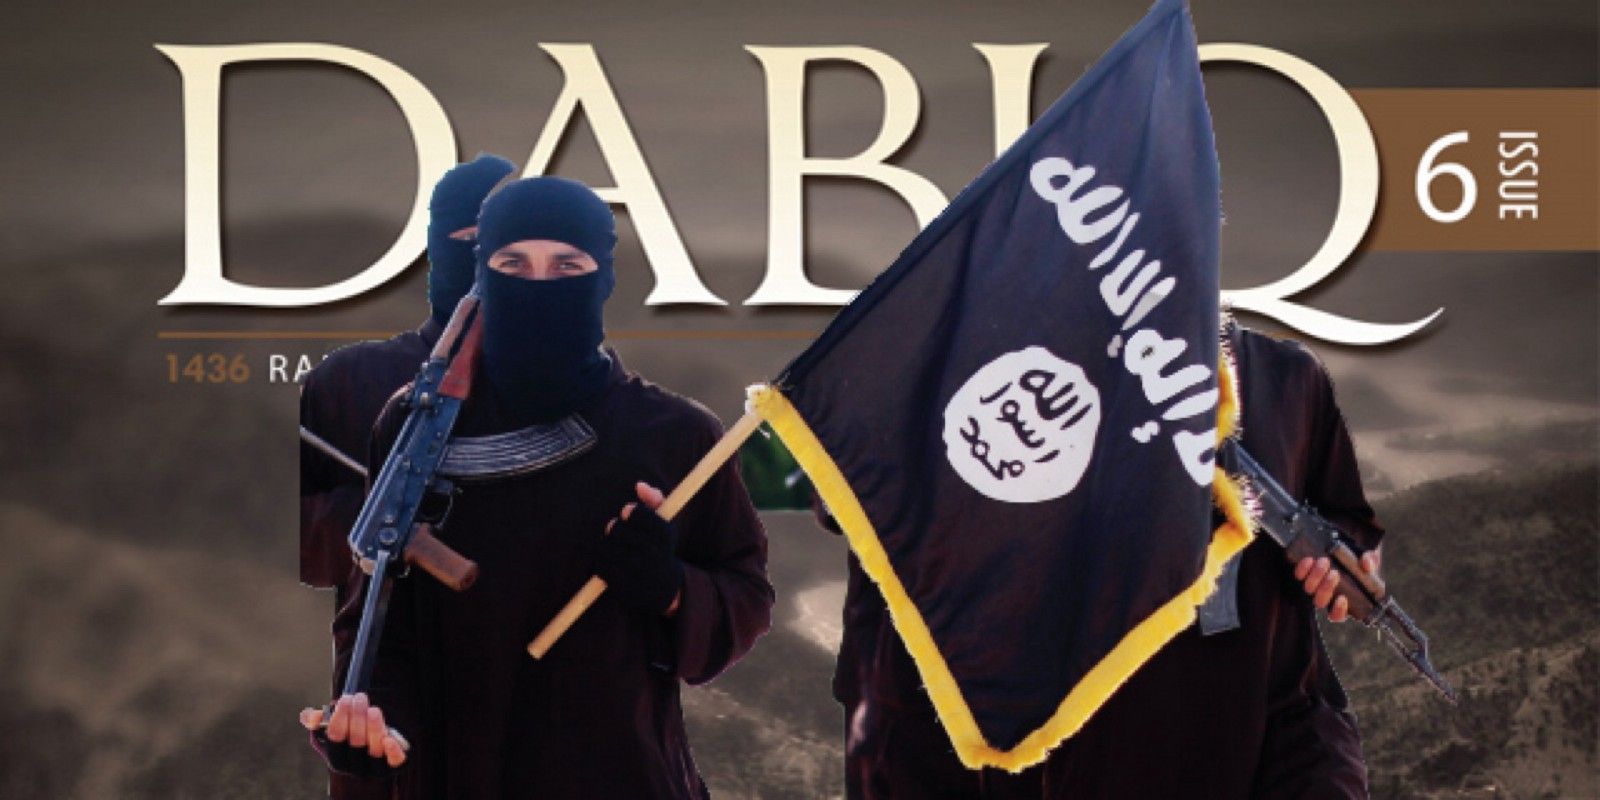 Časopis Dabiq propagoval myšlenky Islámského státu v několika jazycích. Hlavně v angličtině.